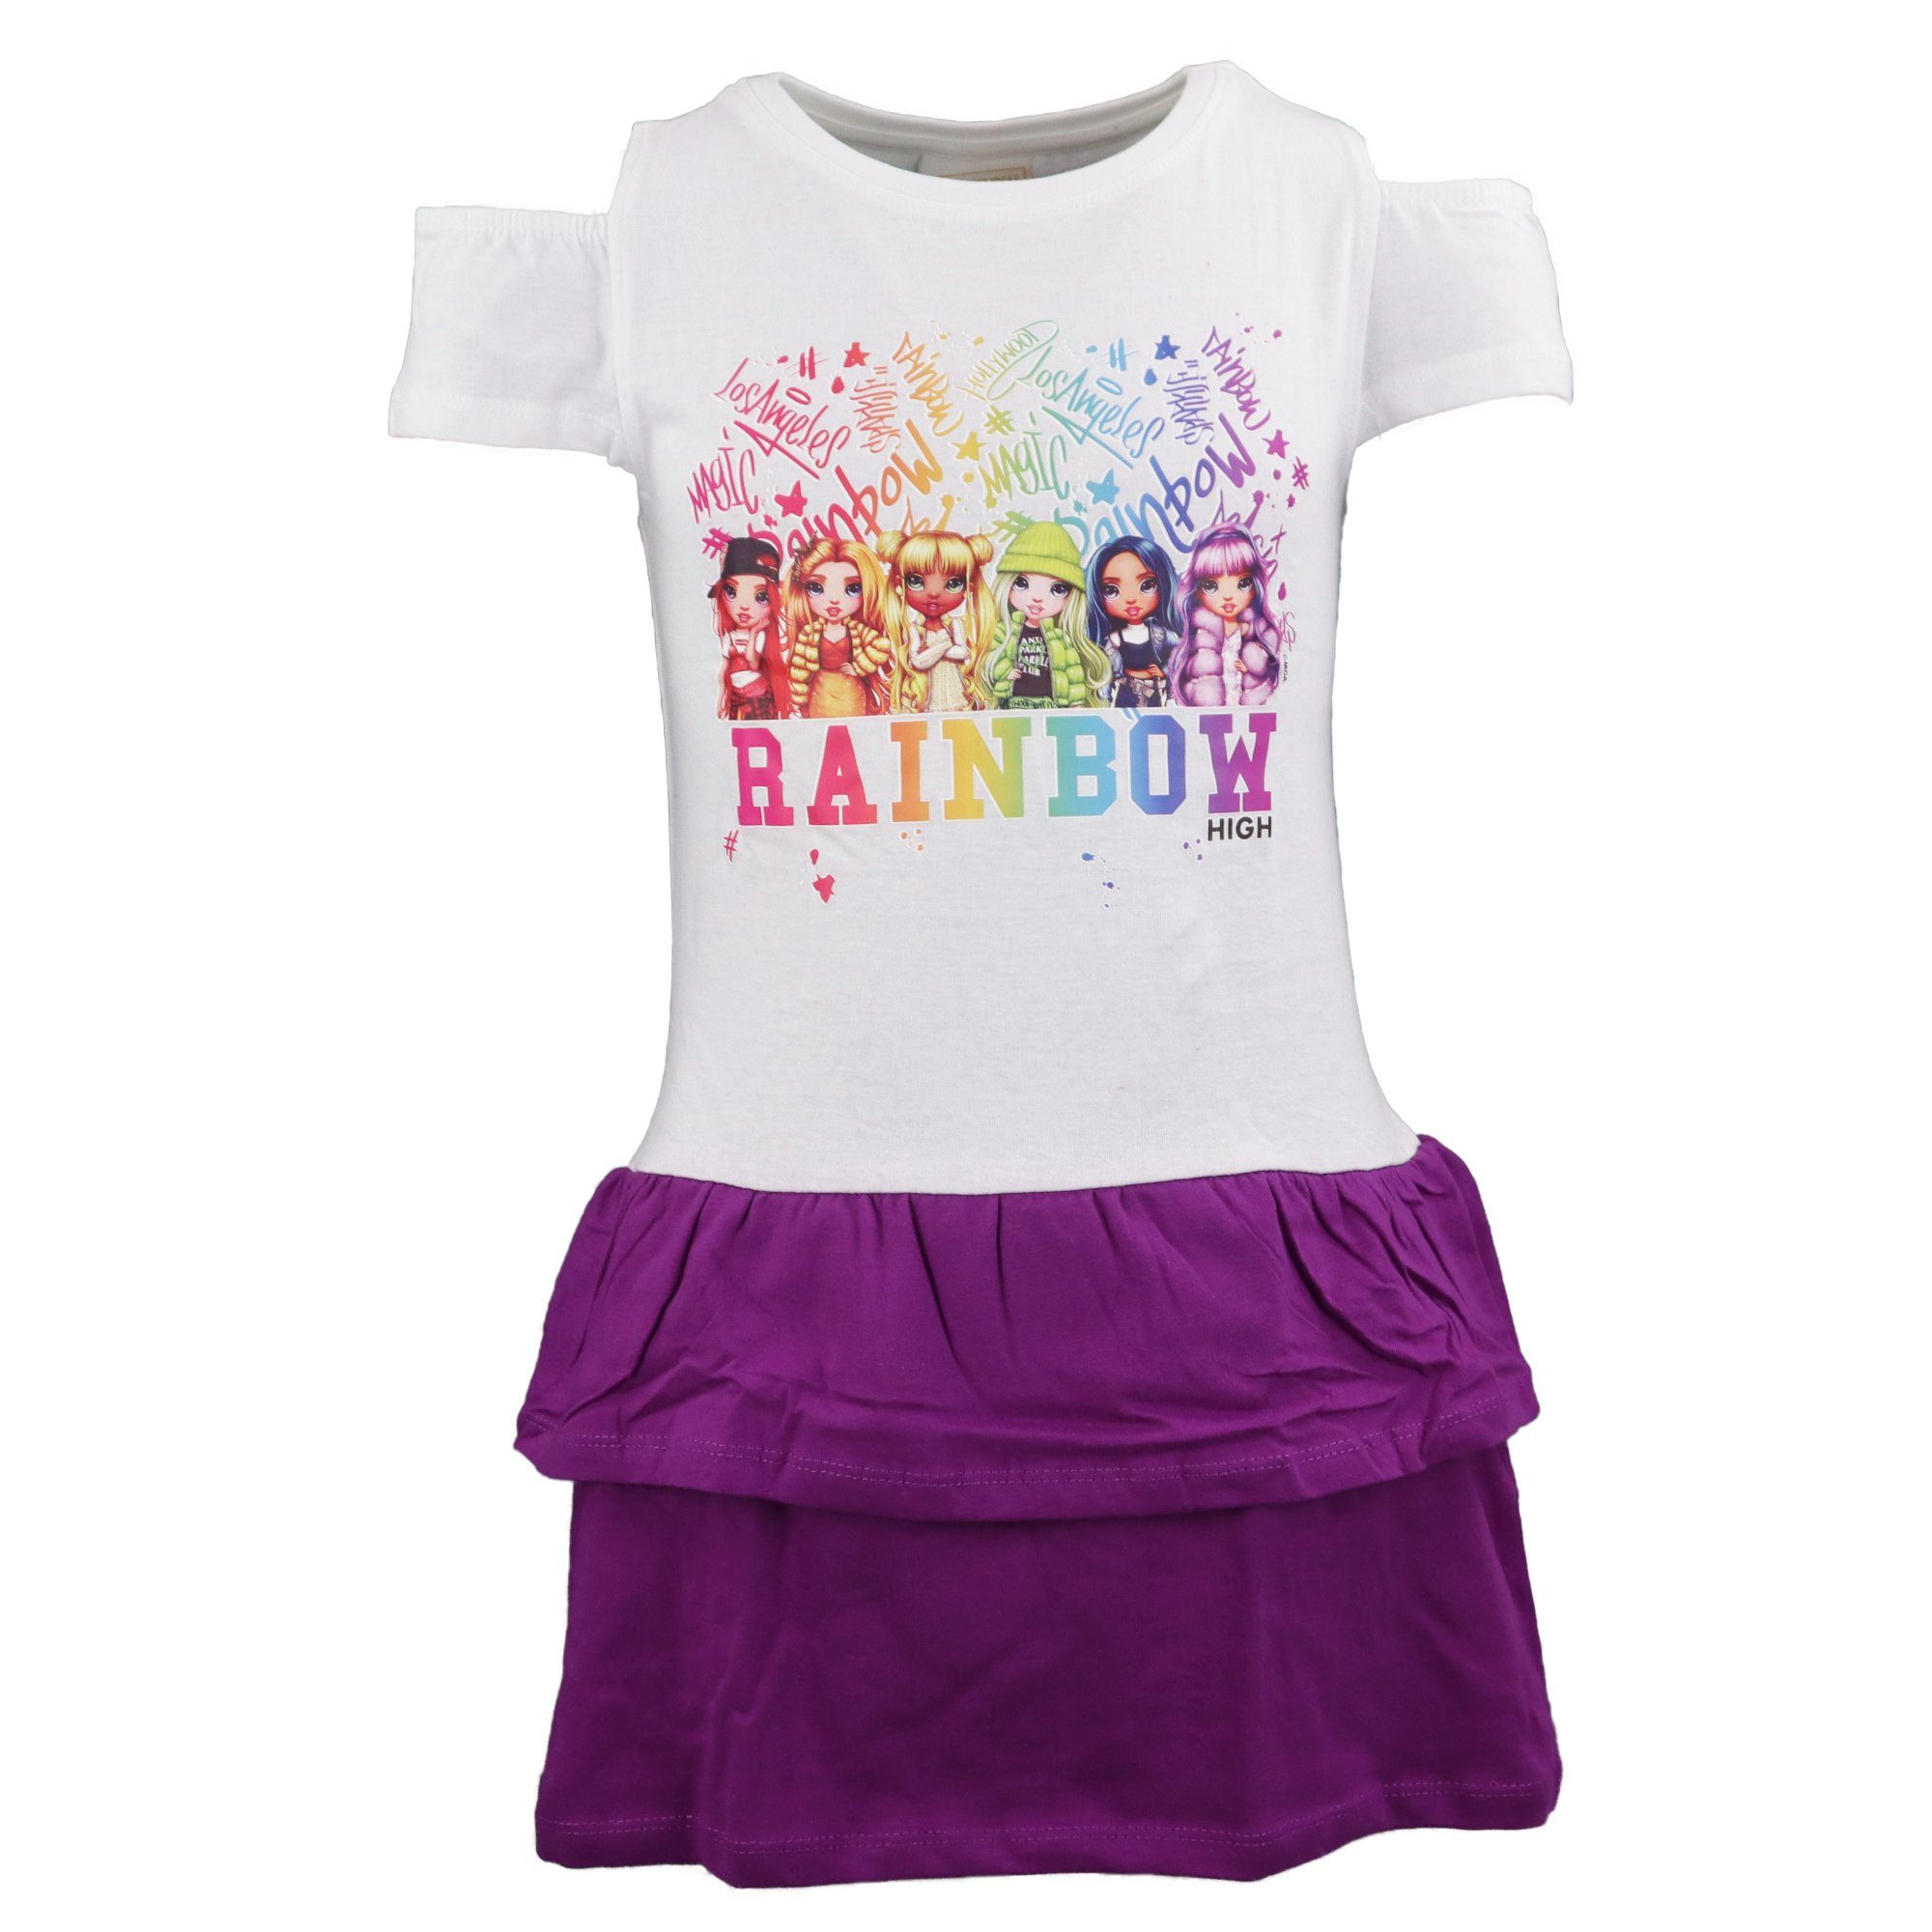 Rainbow High Sommerkleid RainbowHigh Girls Mädchen Kinder Kleid Gr. 104 bis 134, 100% Baumwolle